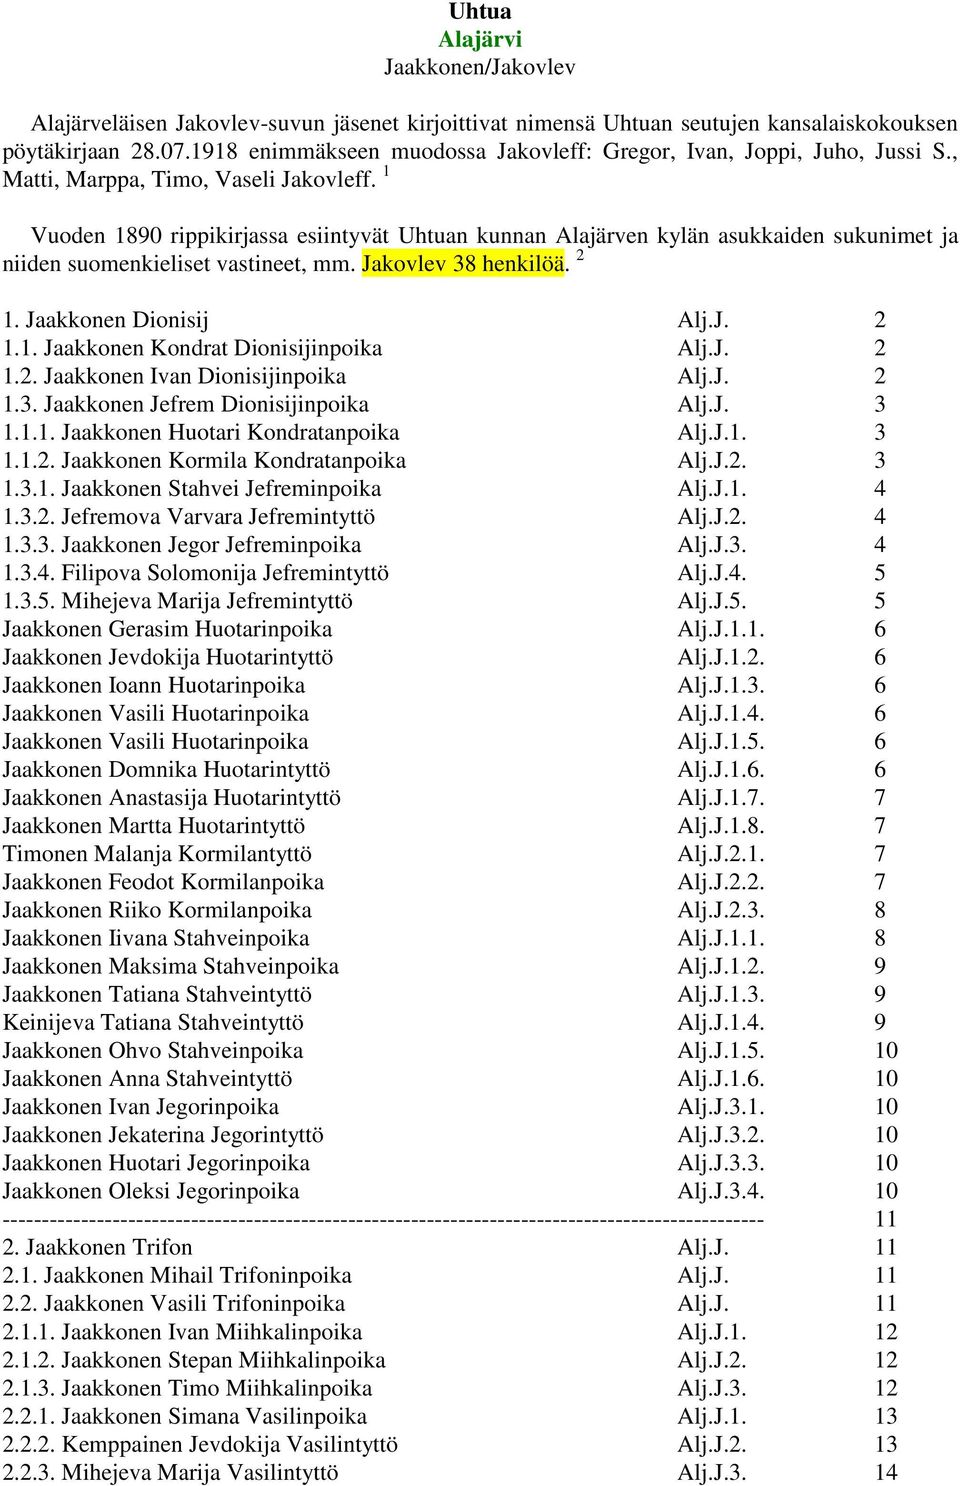 1 Vuoden 1890 rippikirjassa esiintyvät Uhtuan kunnan Alajärven kylän asukkaiden sukunimet ja niiden suomenkieliset vastineet, mm. Jakovlev 38 henkilöä. 2 1. Jaakkonen Dionisij Alj.J. 2 1.1. Jaakkonen Kondrat Dionisijinpoika Alj.